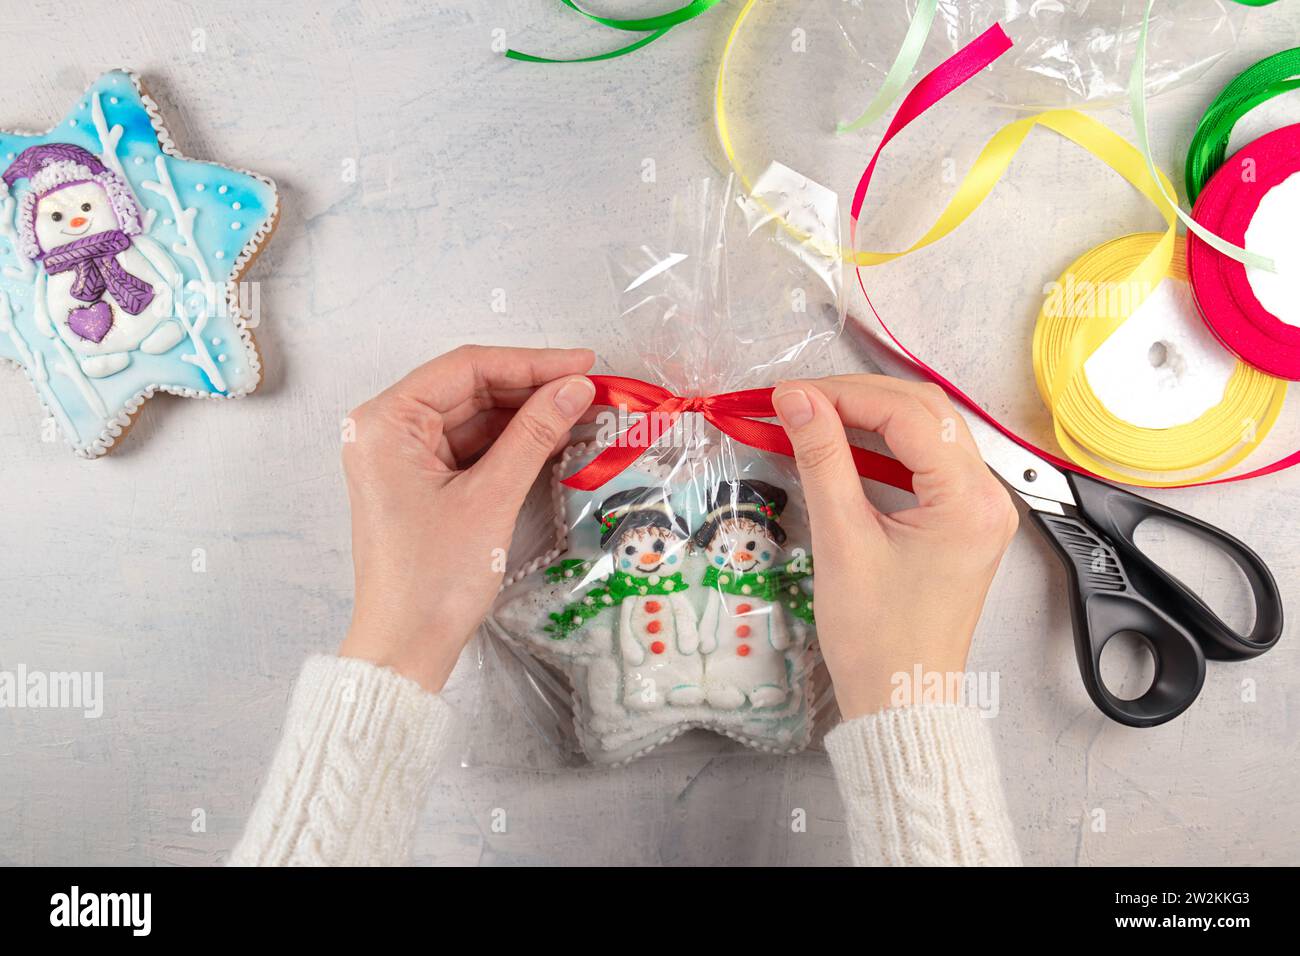 Weibliche Hände in einem weißen Pullover binden eine rote Schleife auf einem Paket Lebkuchenkekse mit Schneemännern auf dem Hintergrund eines Lichttisches, mehrfarbige Bänder und Scheren. Konzept für selbstgemachte Weihnachts- oder Neujahrsgeschenke. Stockfoto